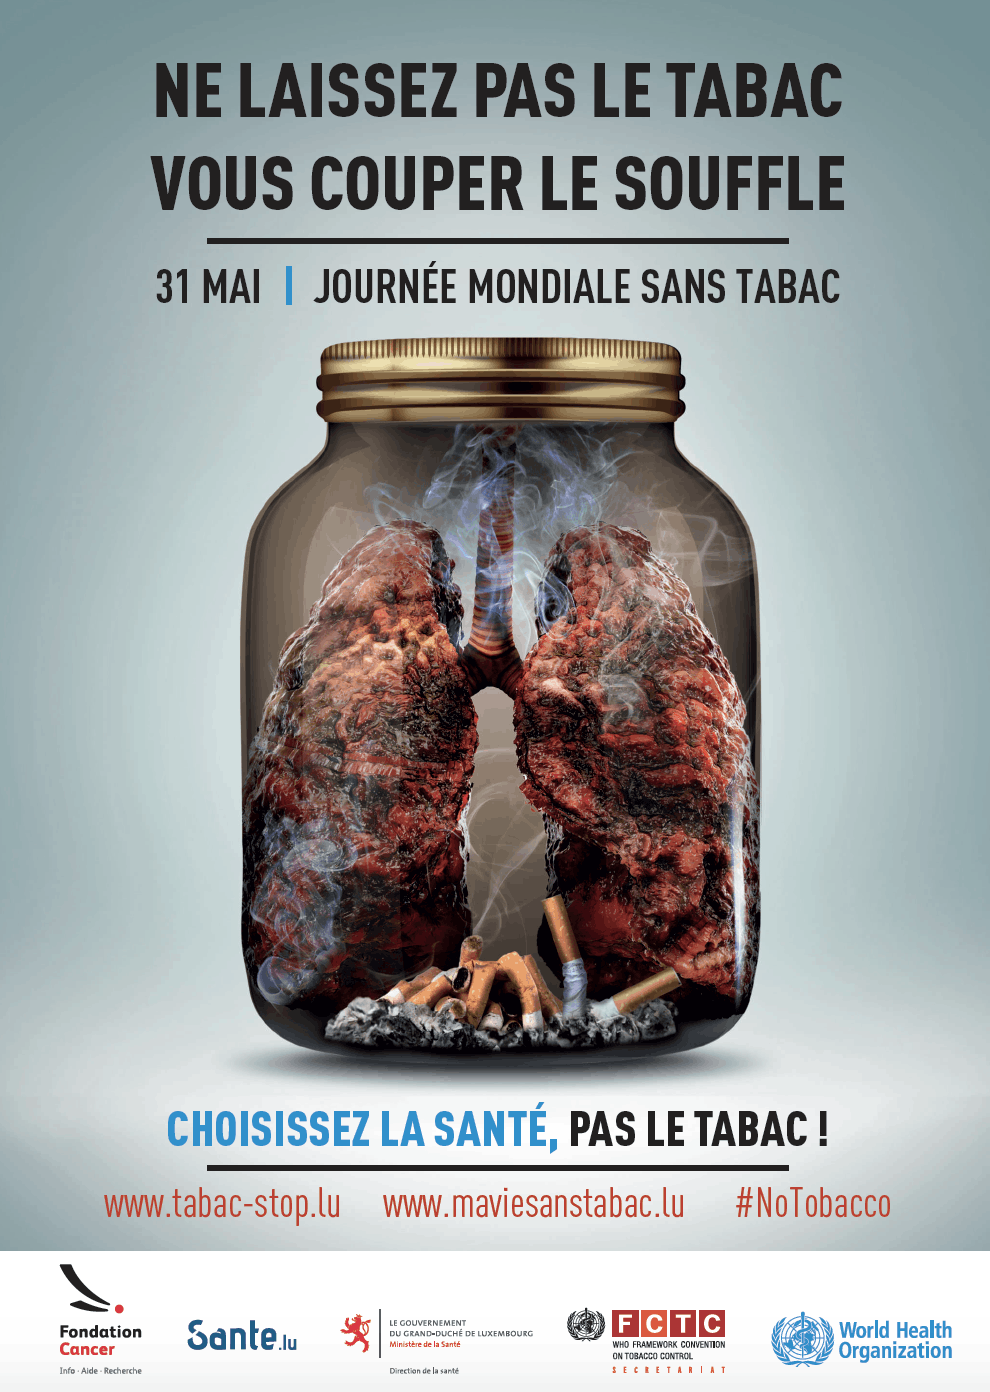 Une campagne d’information et de sensibilisation est mise en place à l’occasion de la Journée mondiale sans tabac. (Image: Gouvernement du Luxembourg)